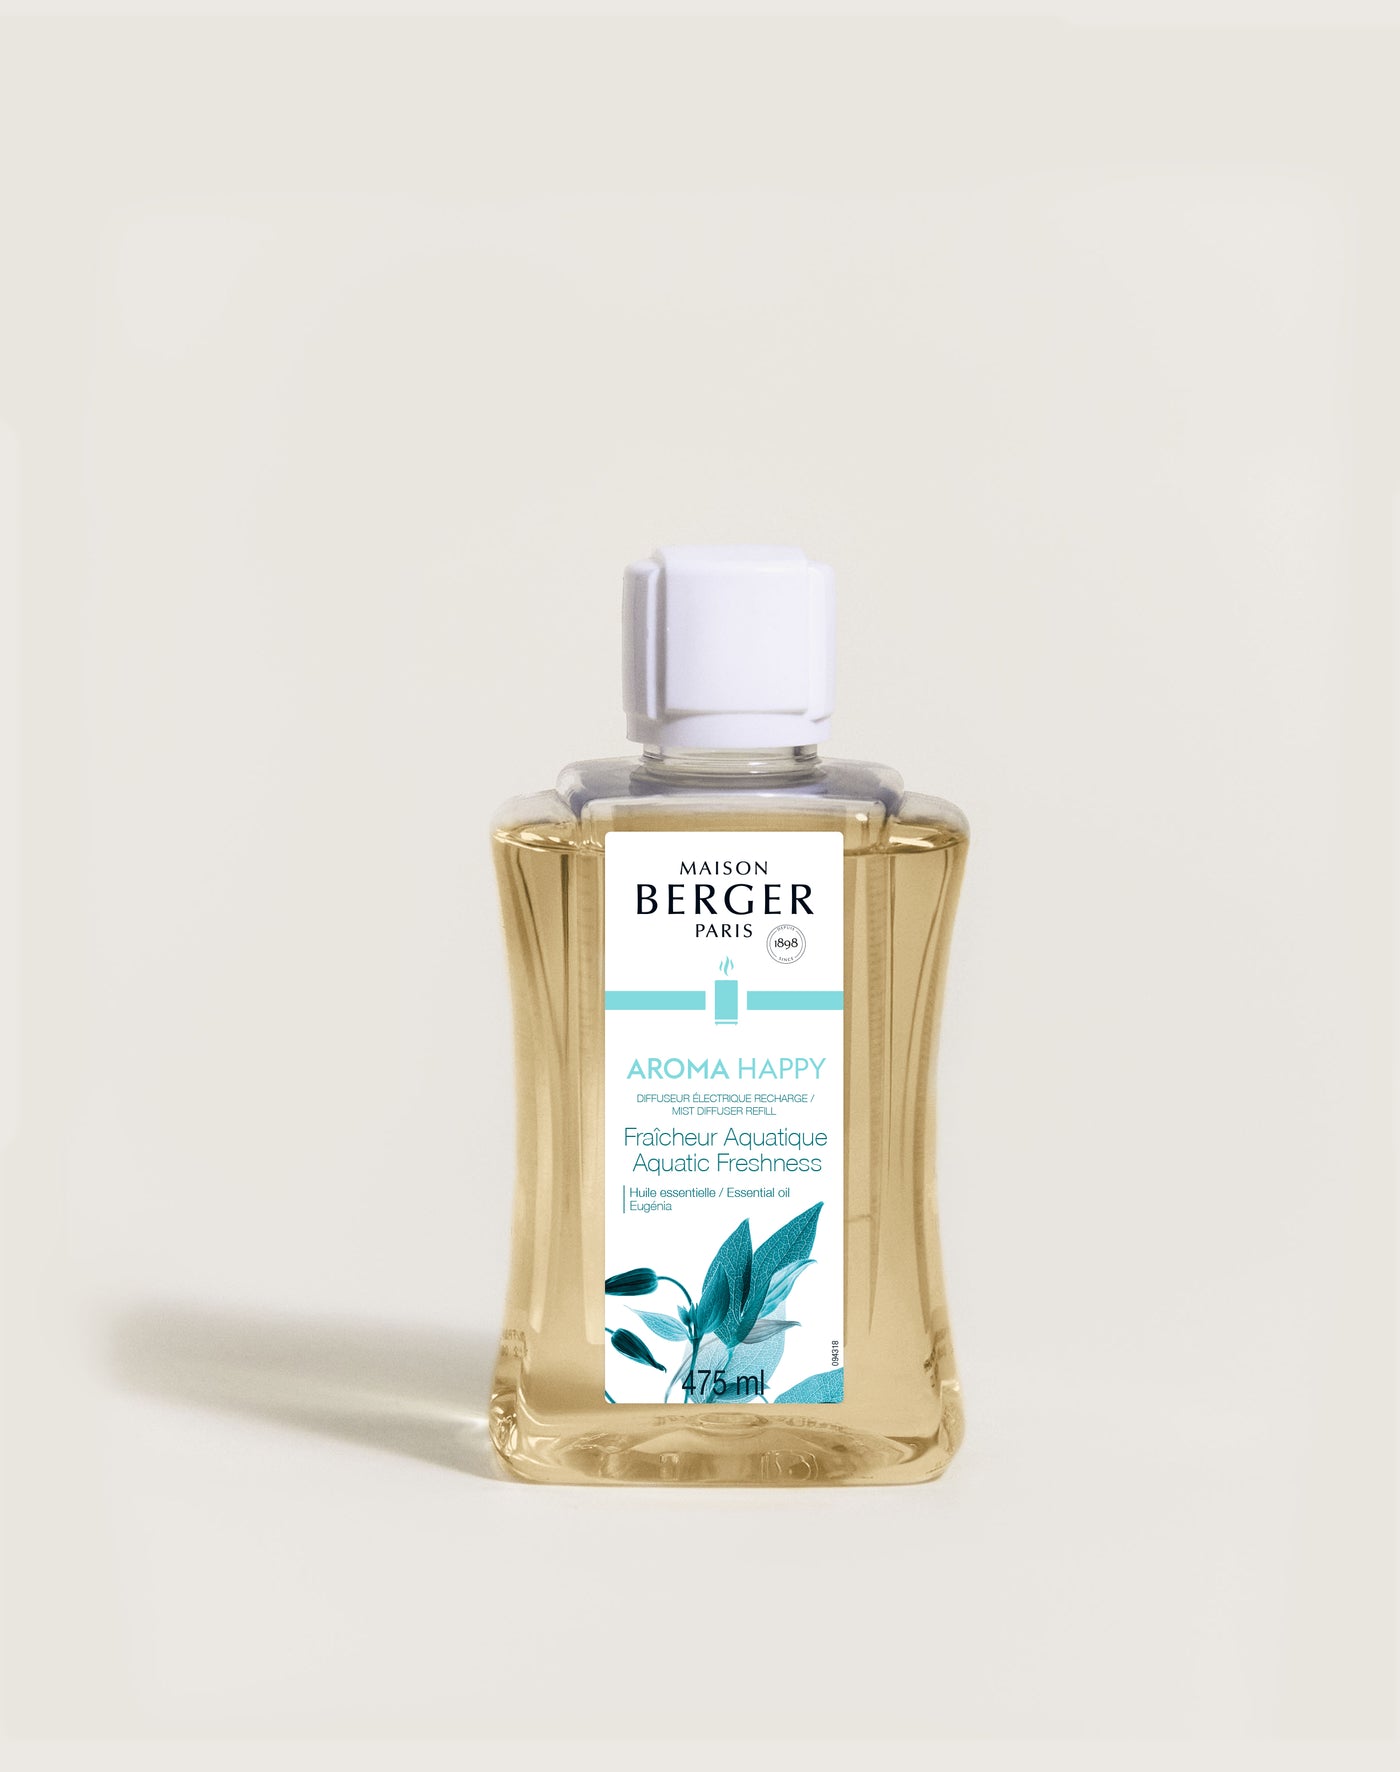 Recharge pour Parfum d'ambiance Maison propre 500 ml : Holisaroma,  l'essentiel de l'aromathérapie familiale